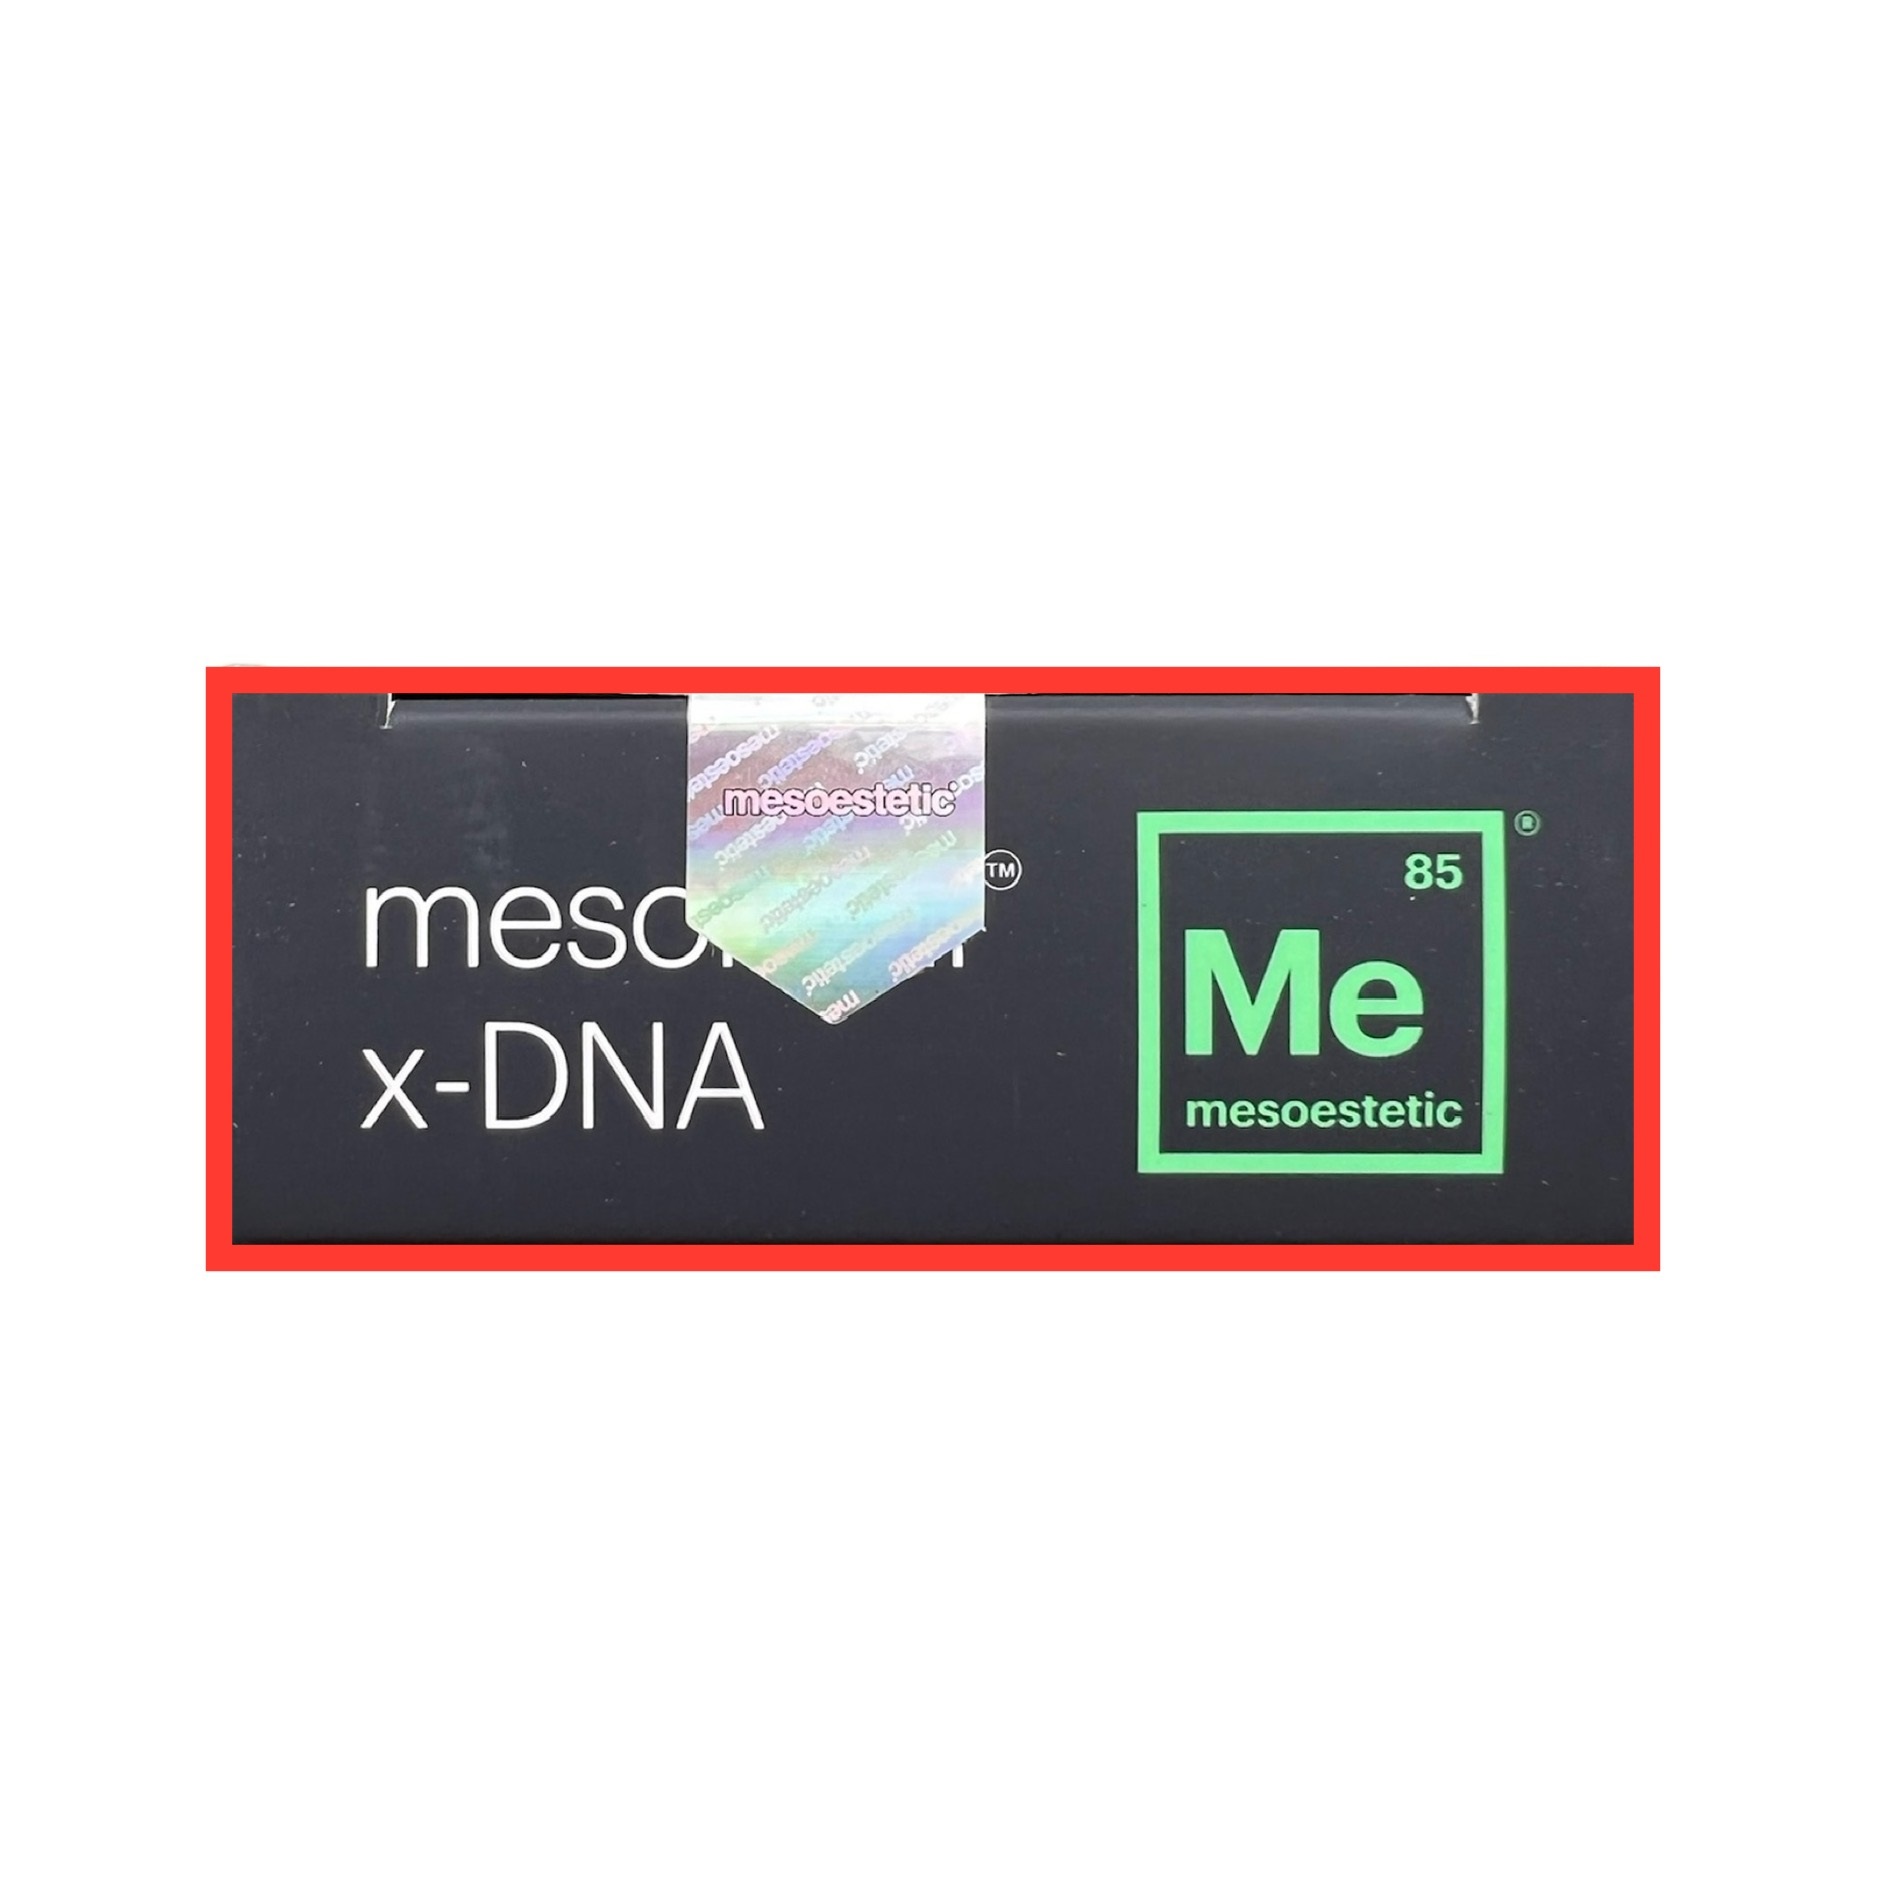 MESOESTETIC MESOHYAL X-DNA